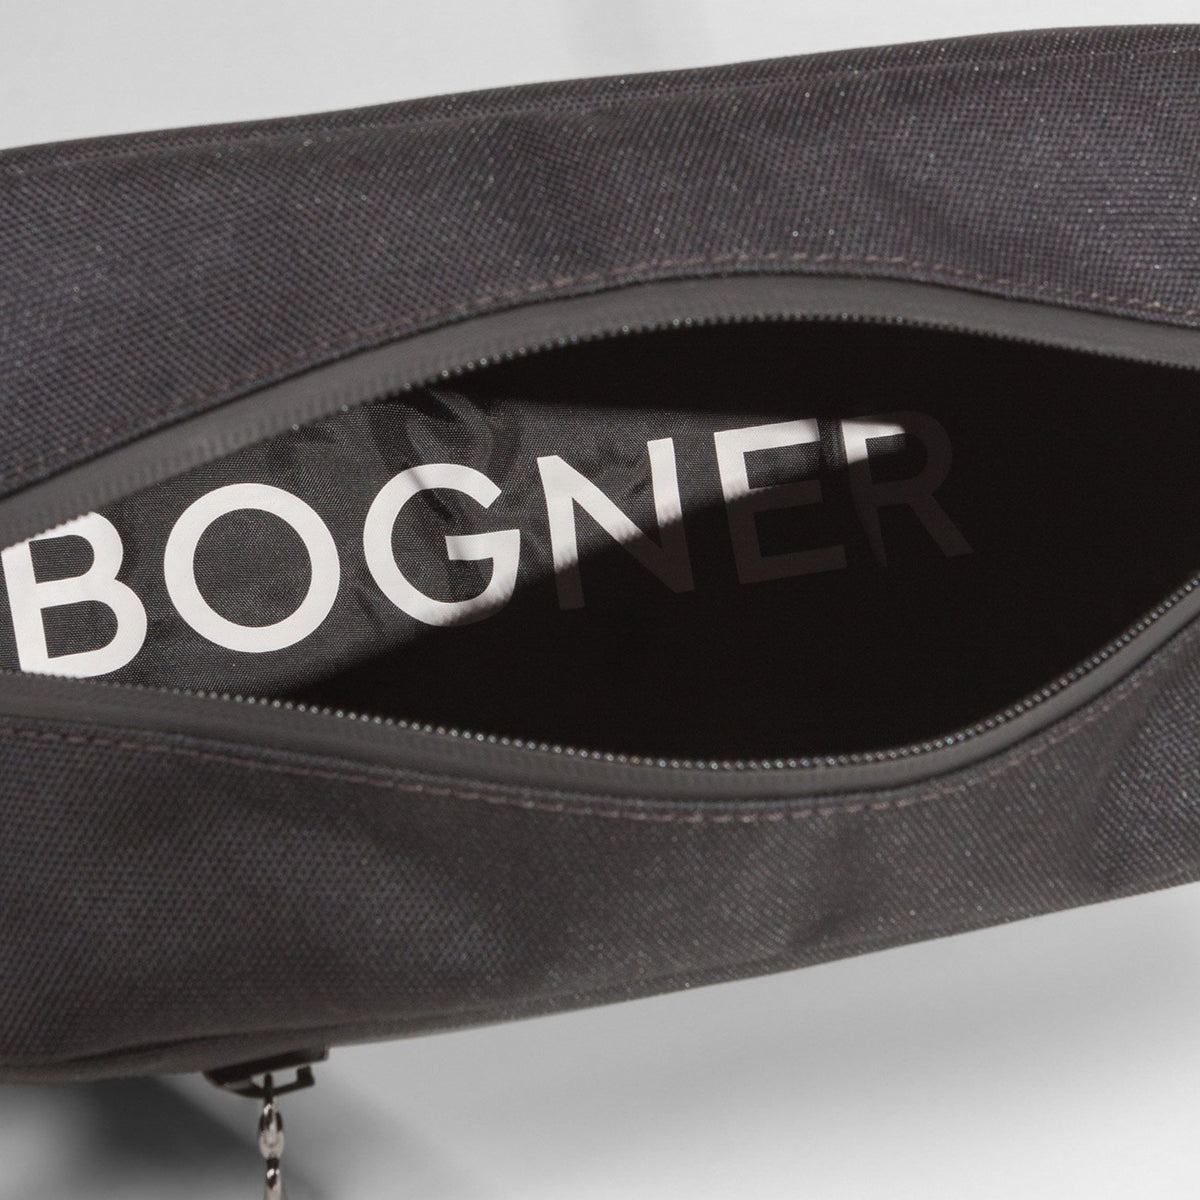 James Bond Wash Bag - By Bogner